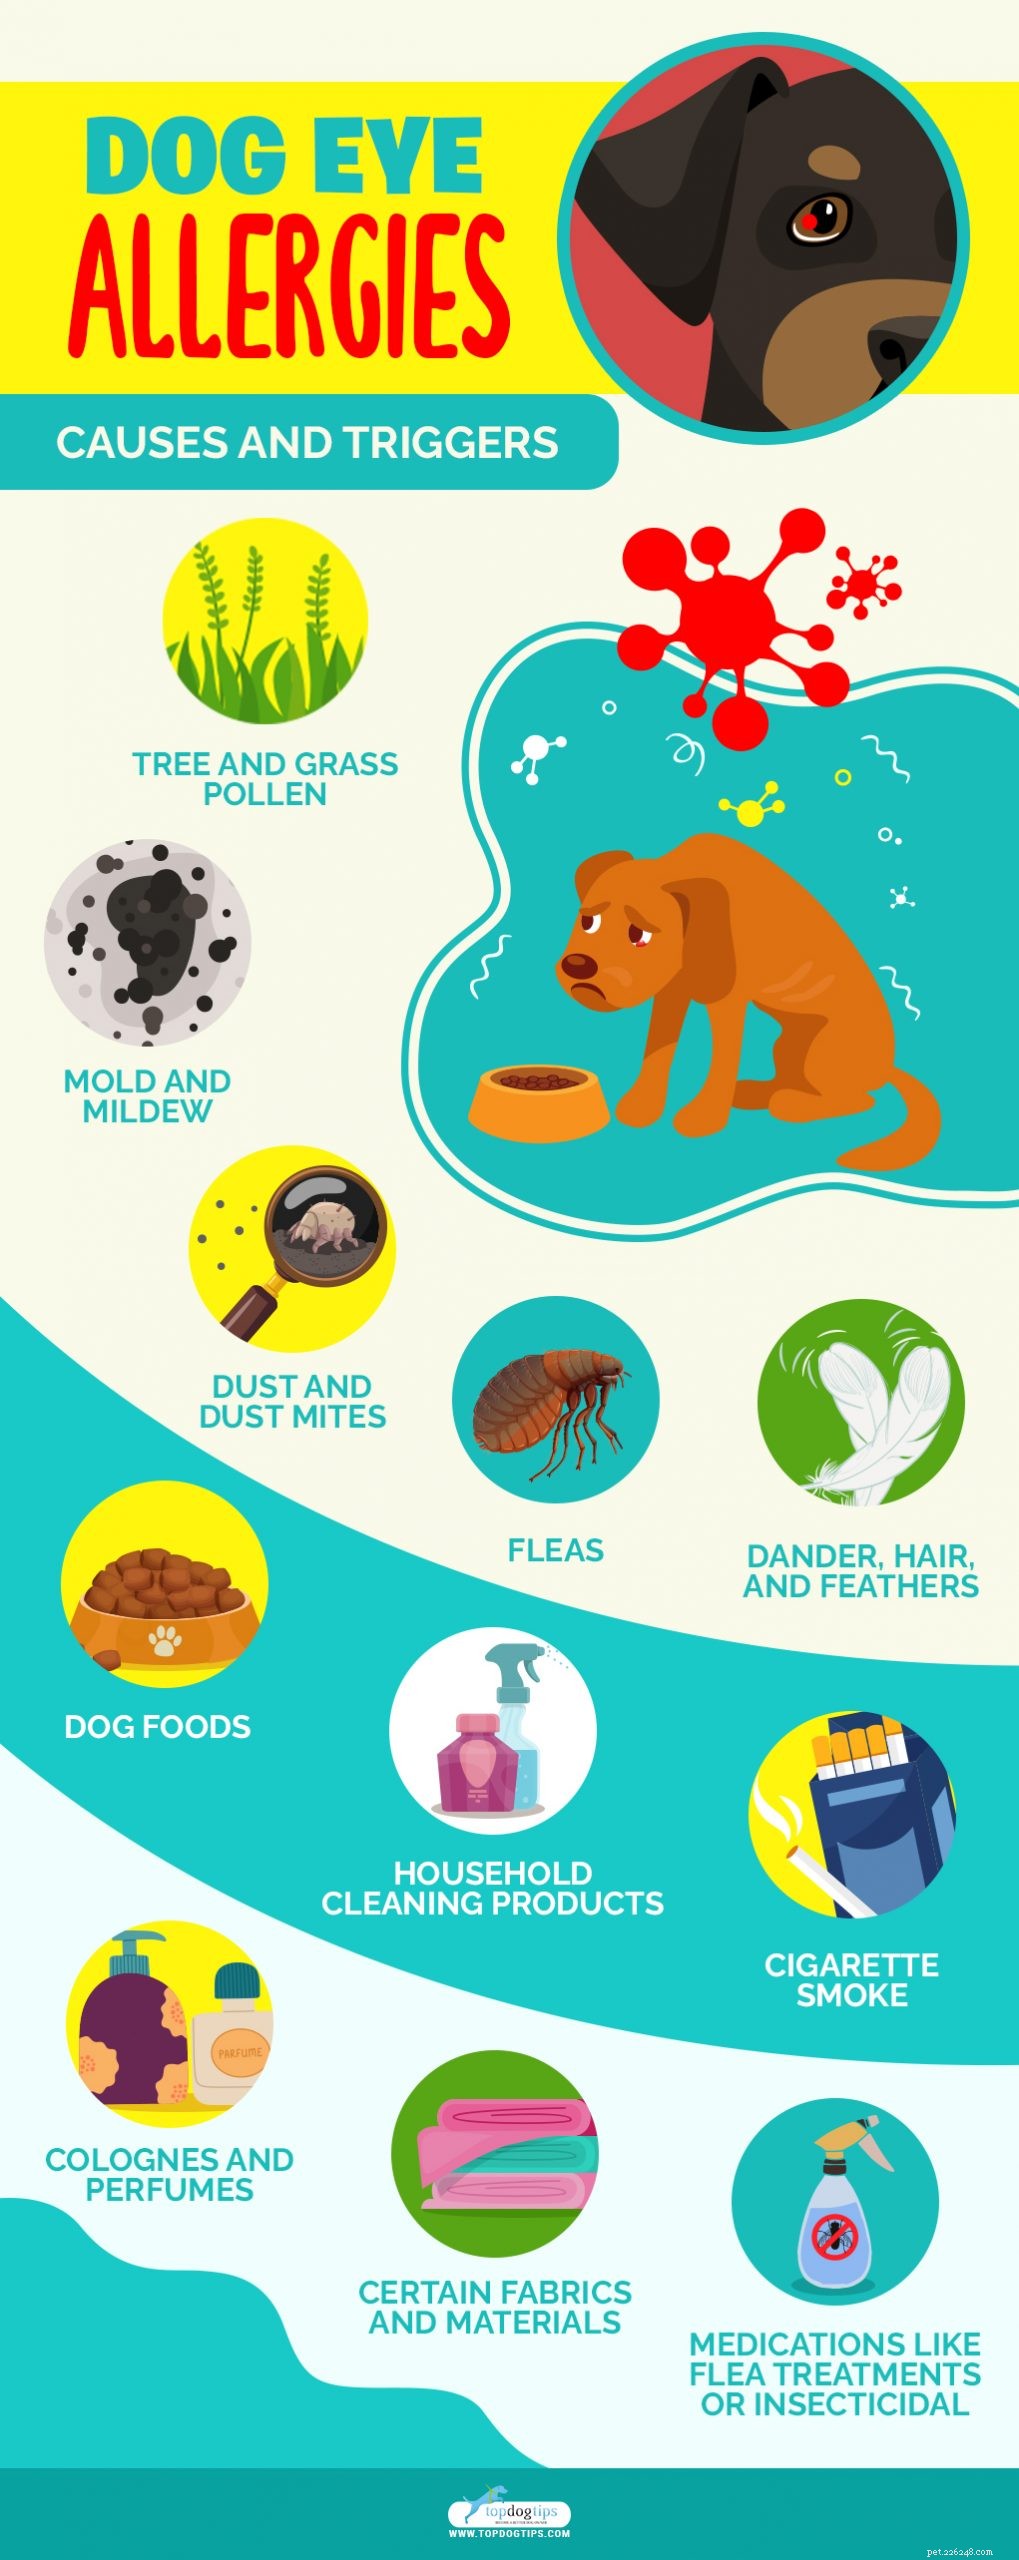 Allergie agli occhi del cane:sintomi, cause, rimedi